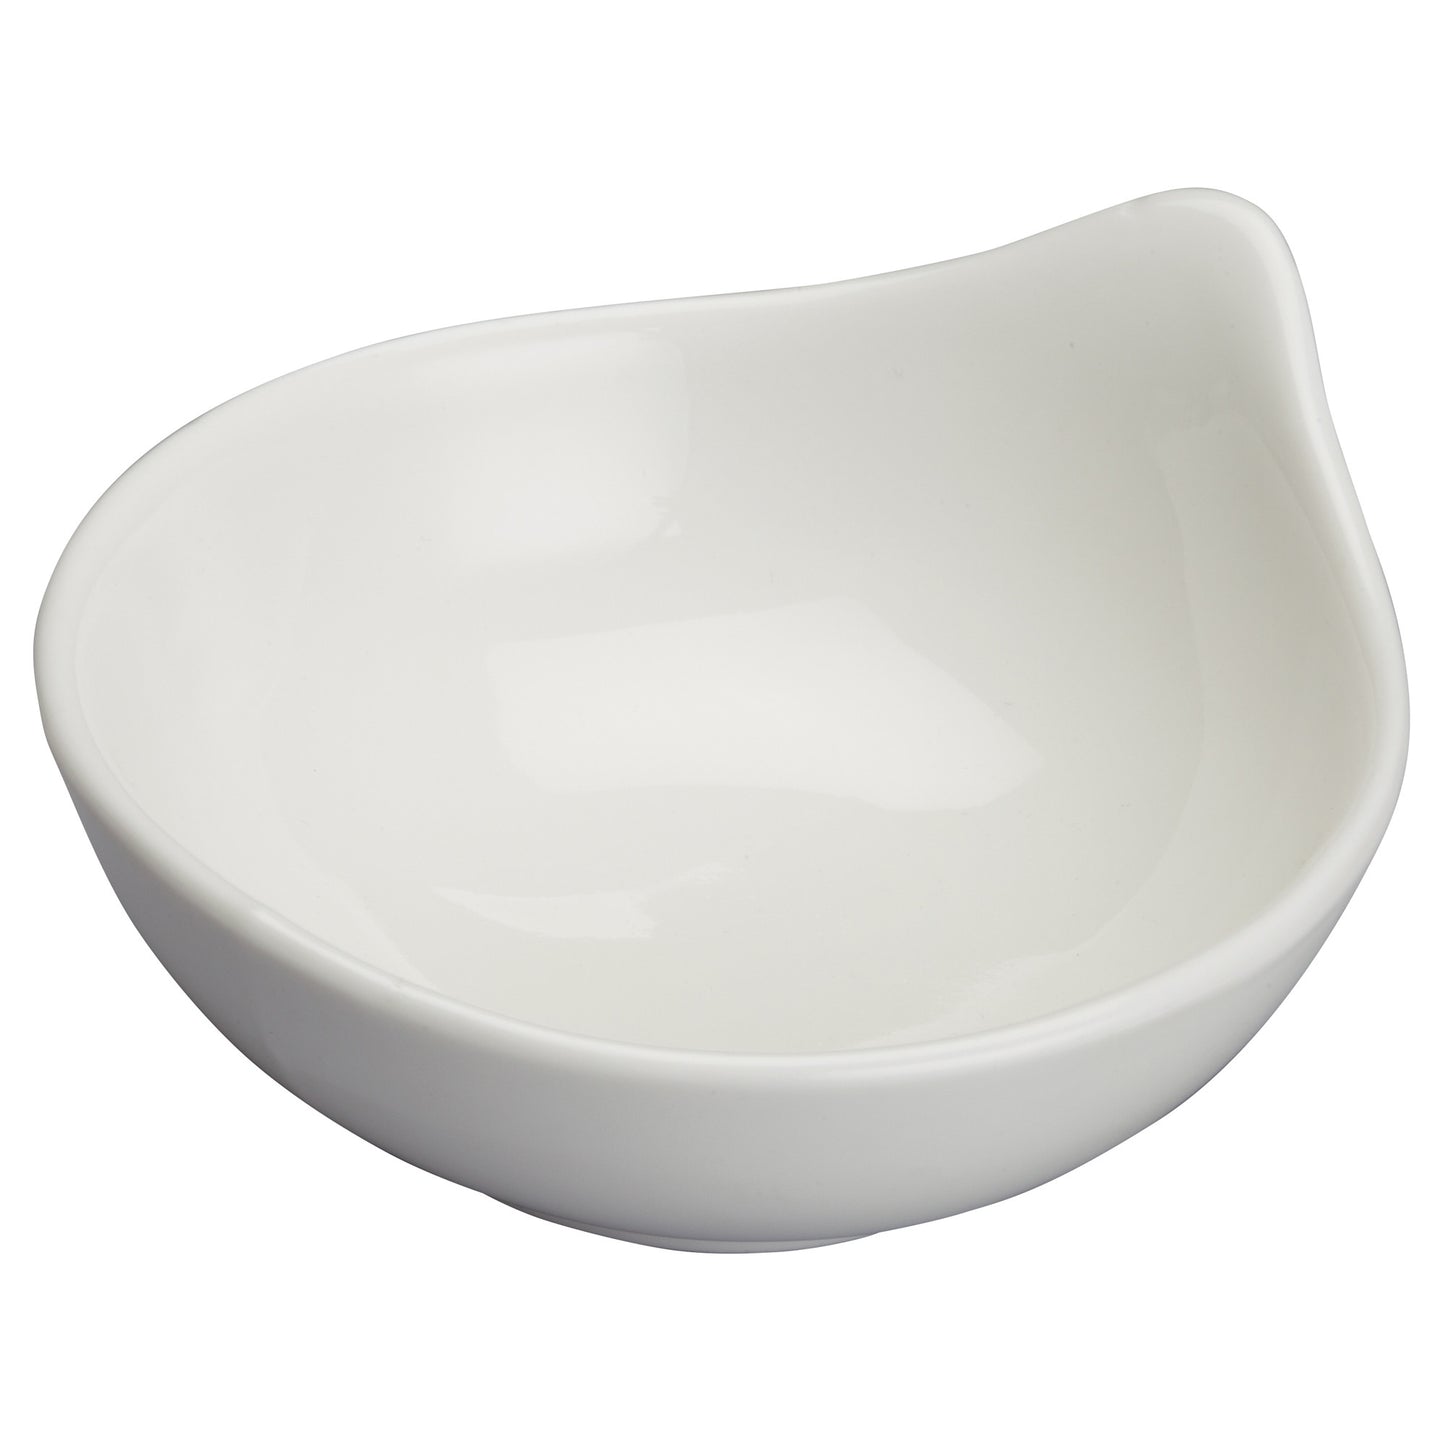 3-3/4"Dia Porcelain Dish, Bright White, 36 pcs/case